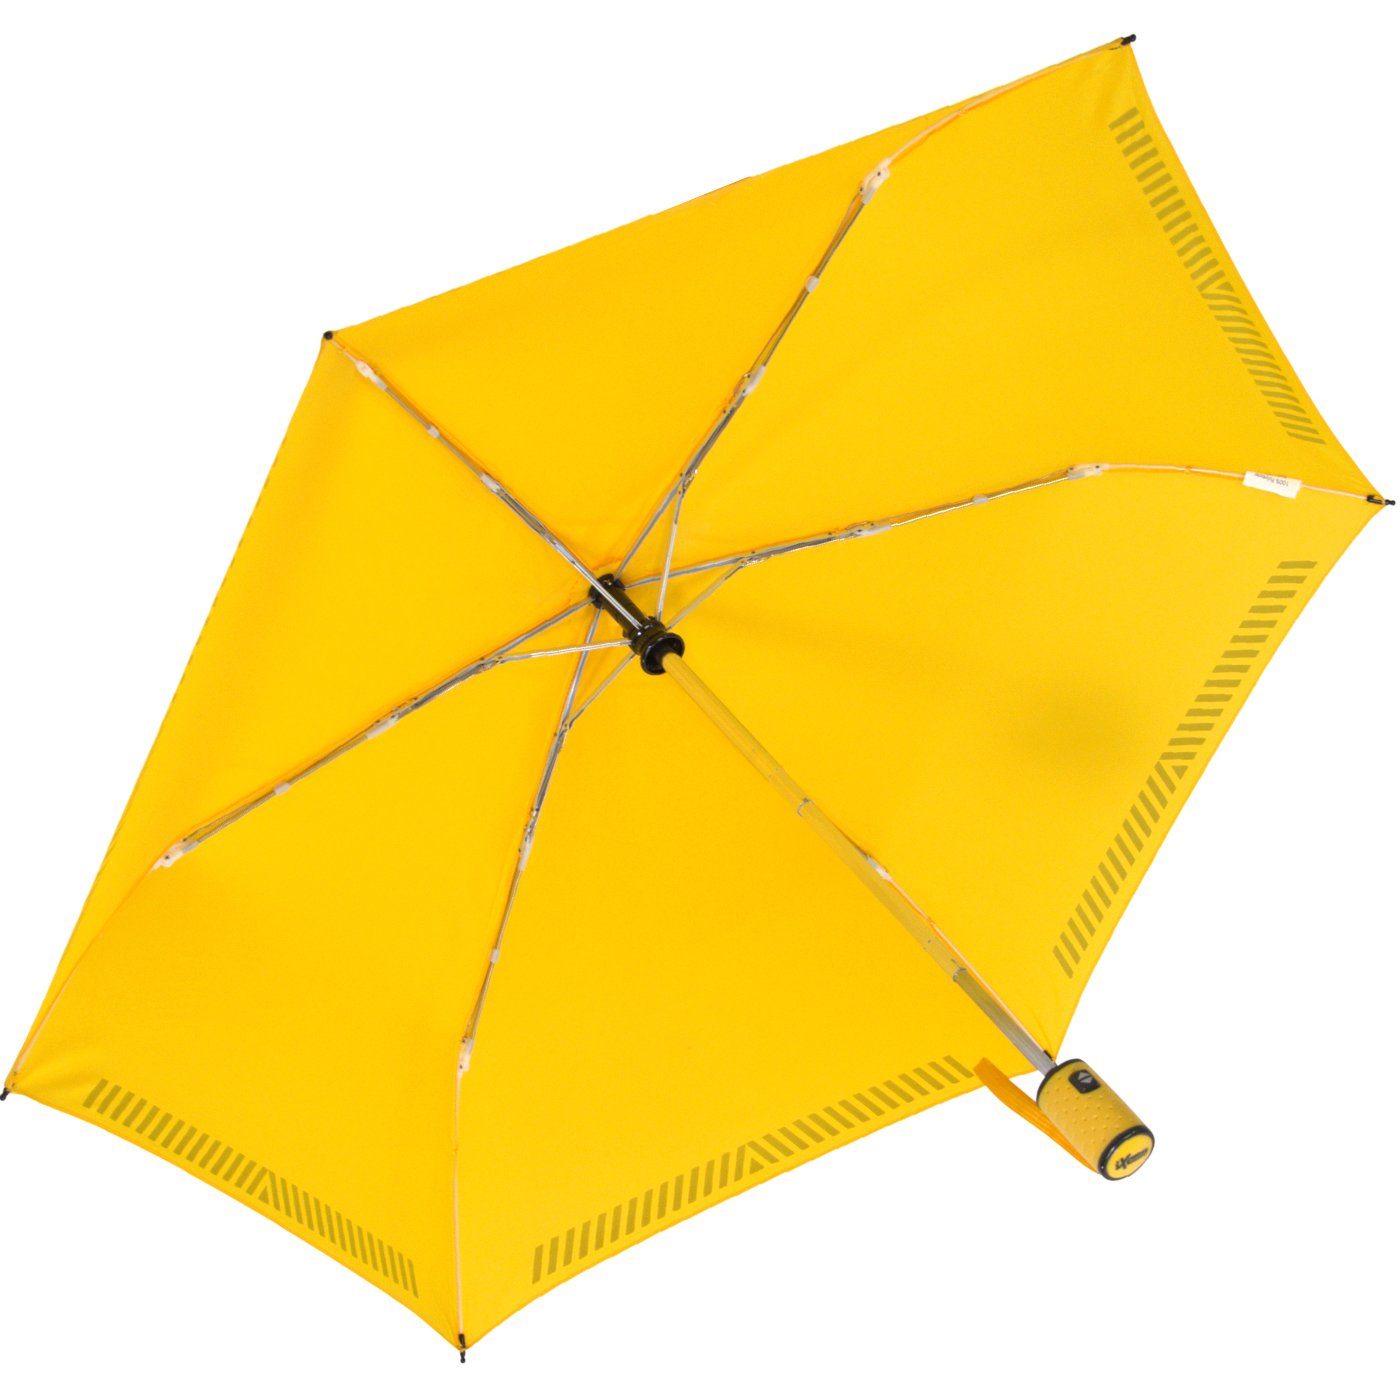 Auf-Zu-Automatik, Reflex-Streifen gelb Kinderschirm - durch Sicherheit Taschenregenschirm iX-brella mit reflektierend,